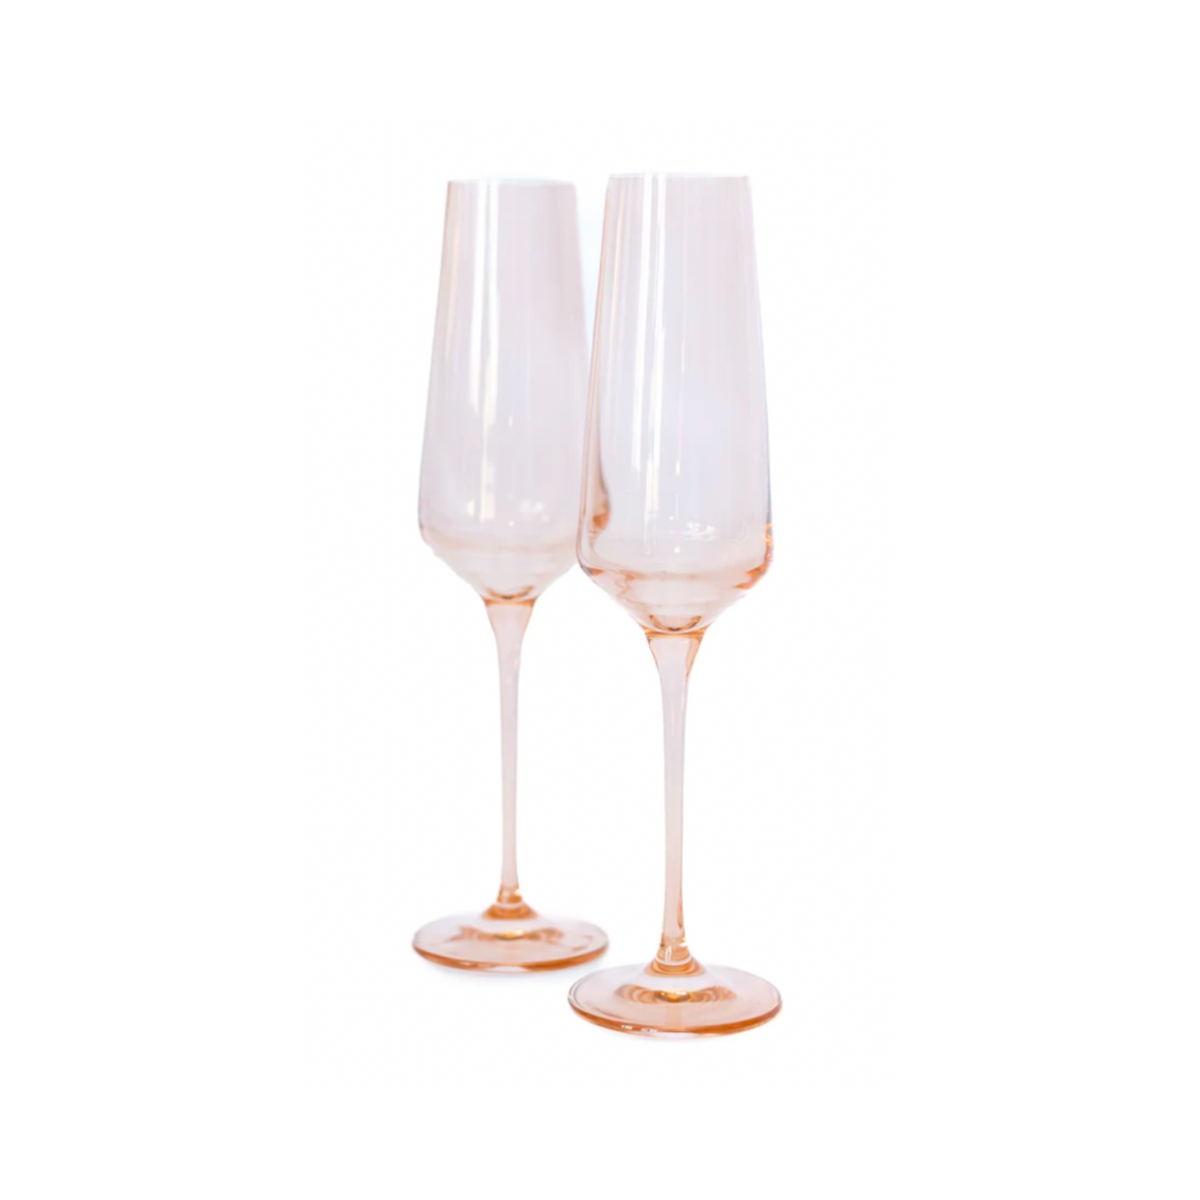 Estelle Colored Glass Estelle Color 2-Piece Champagne Flute Glass Set Blush Pink